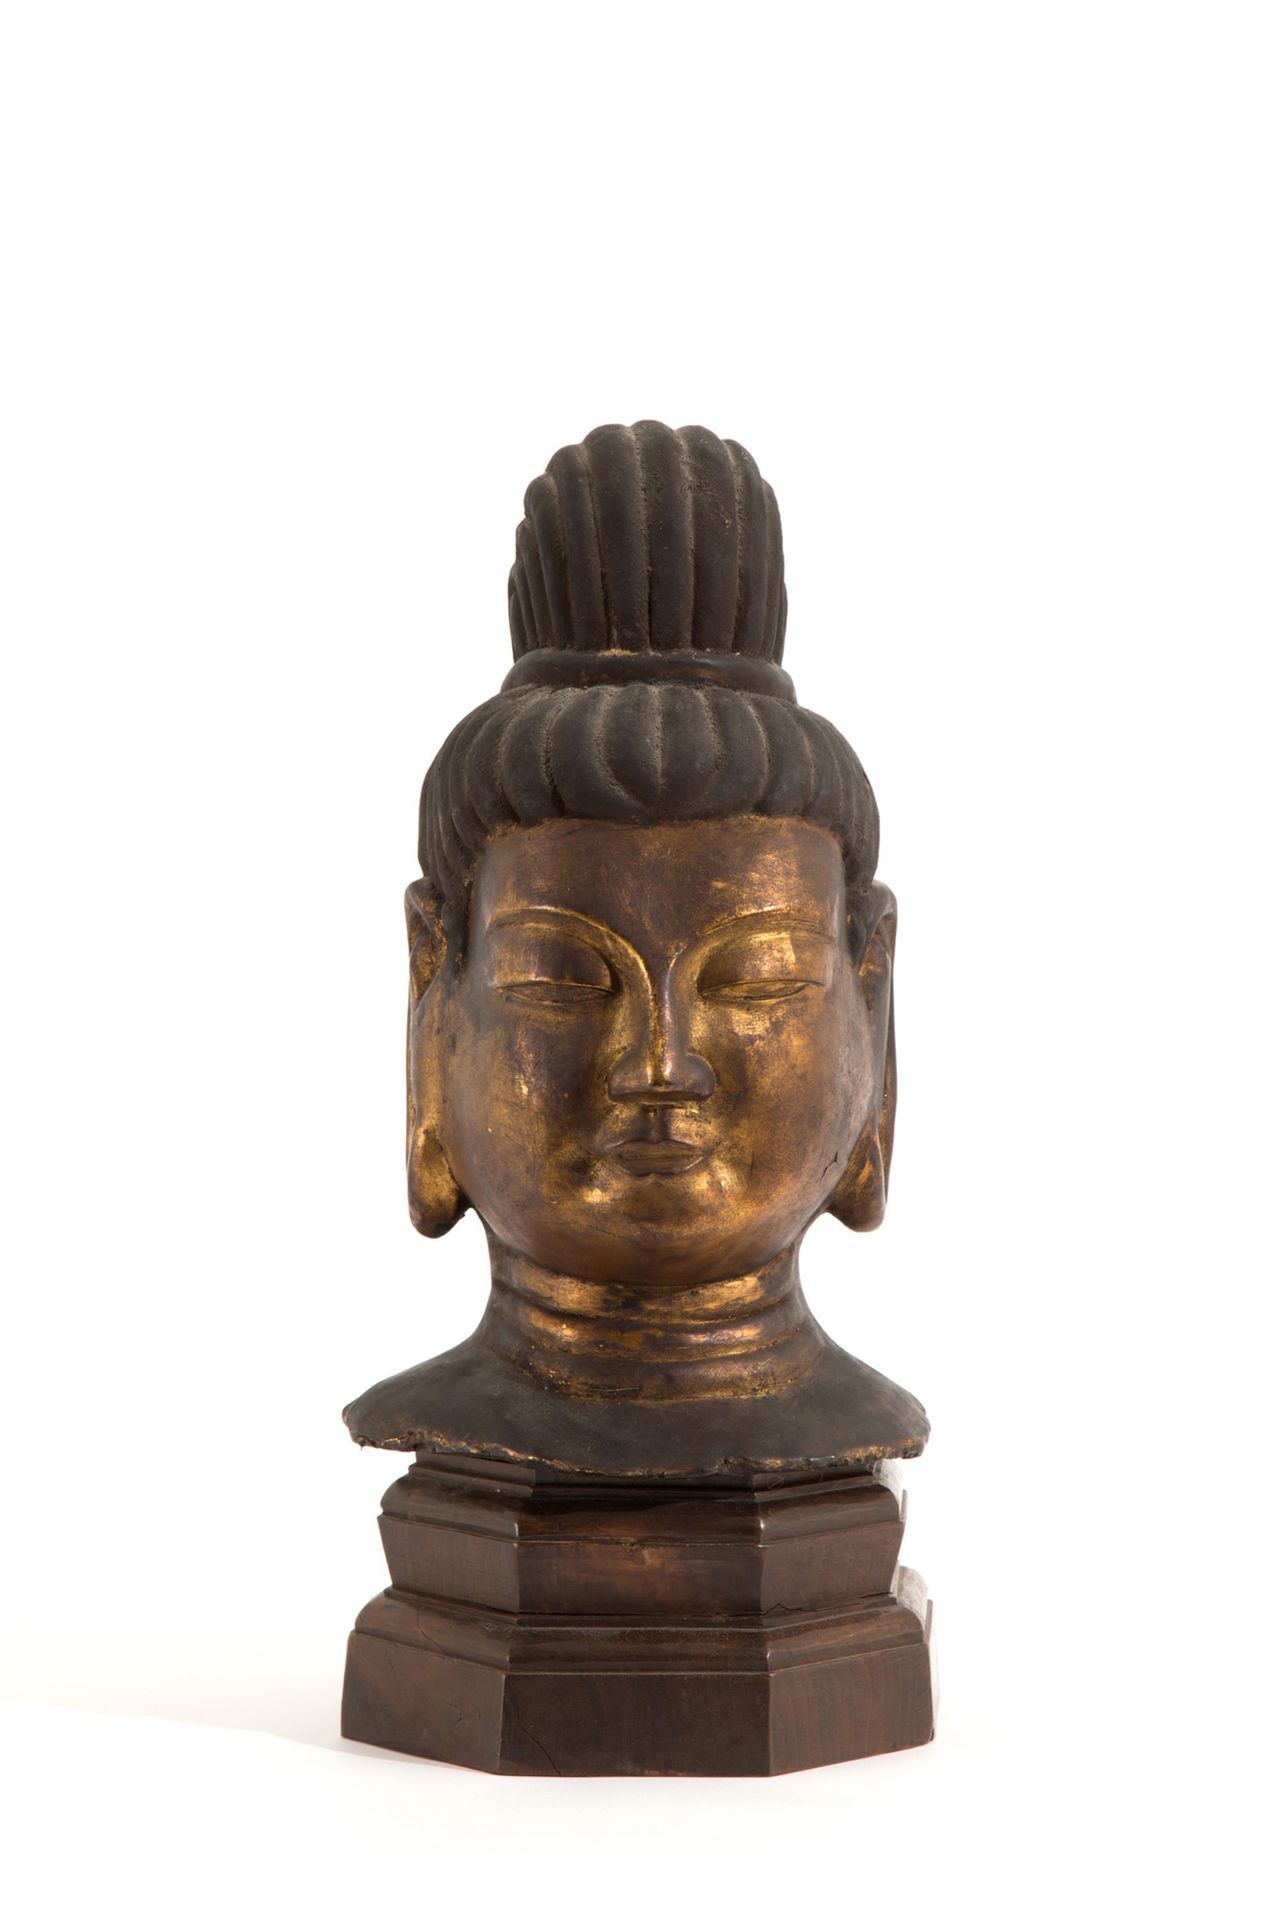 Papier mache sculpture "BUDDHA HEAD" 纸浆雕塑，描绘 "佛祖的头"。木质底座。中国。19世纪。高约35厘米。